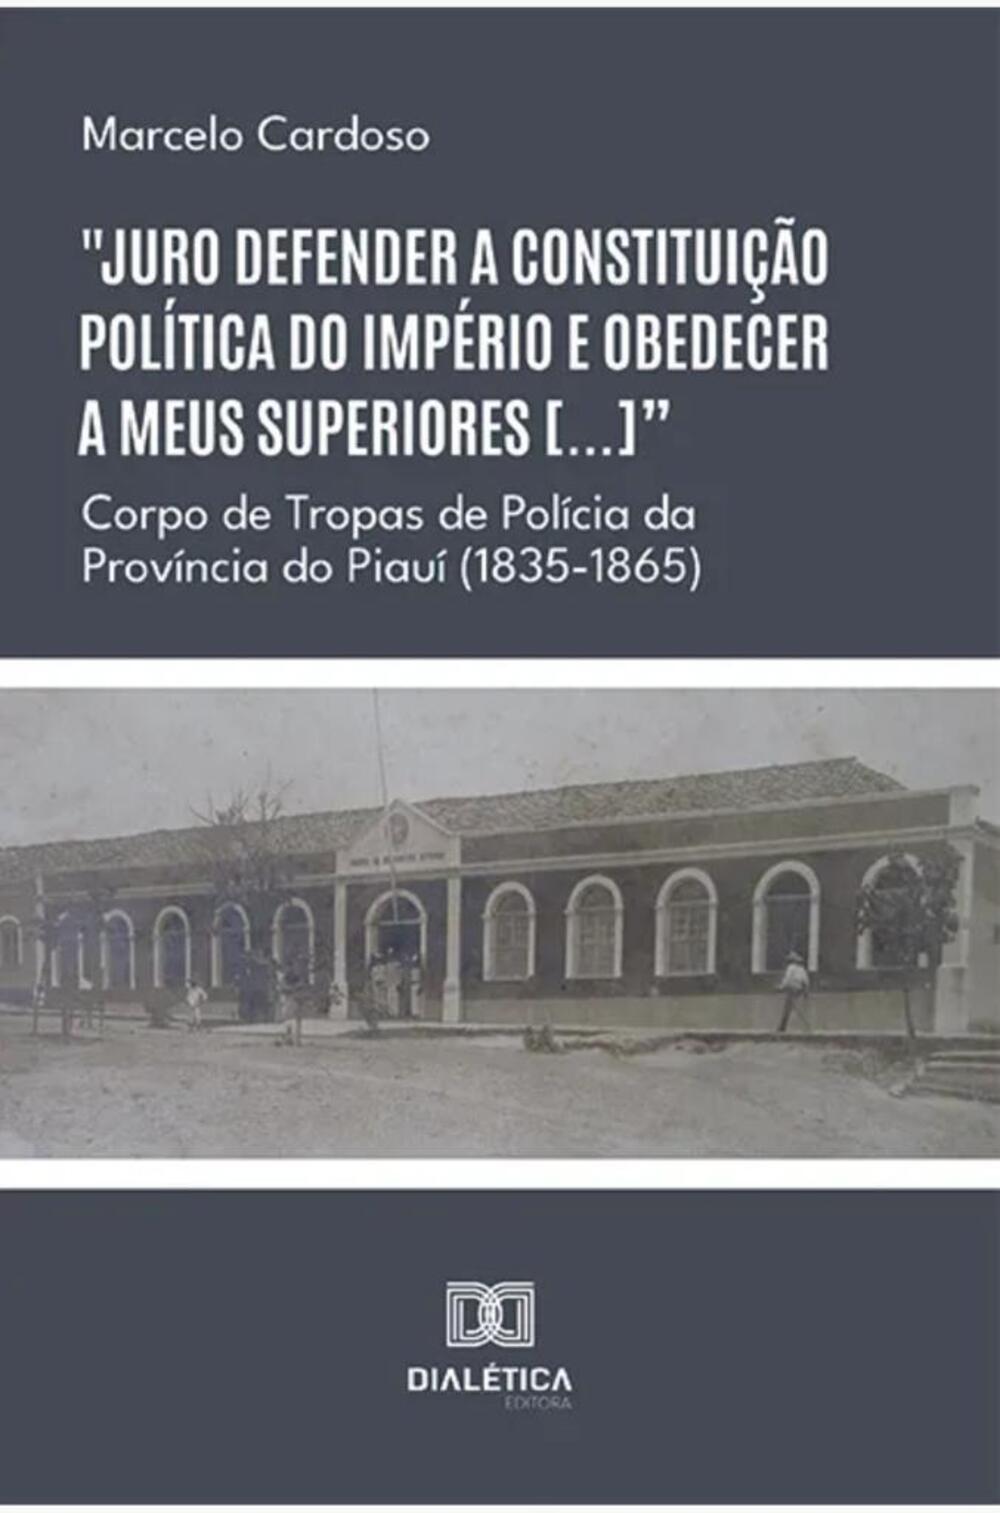 Capa do livro "Juro defender a constituição política do Império e obedecer a meus superiores [...]".